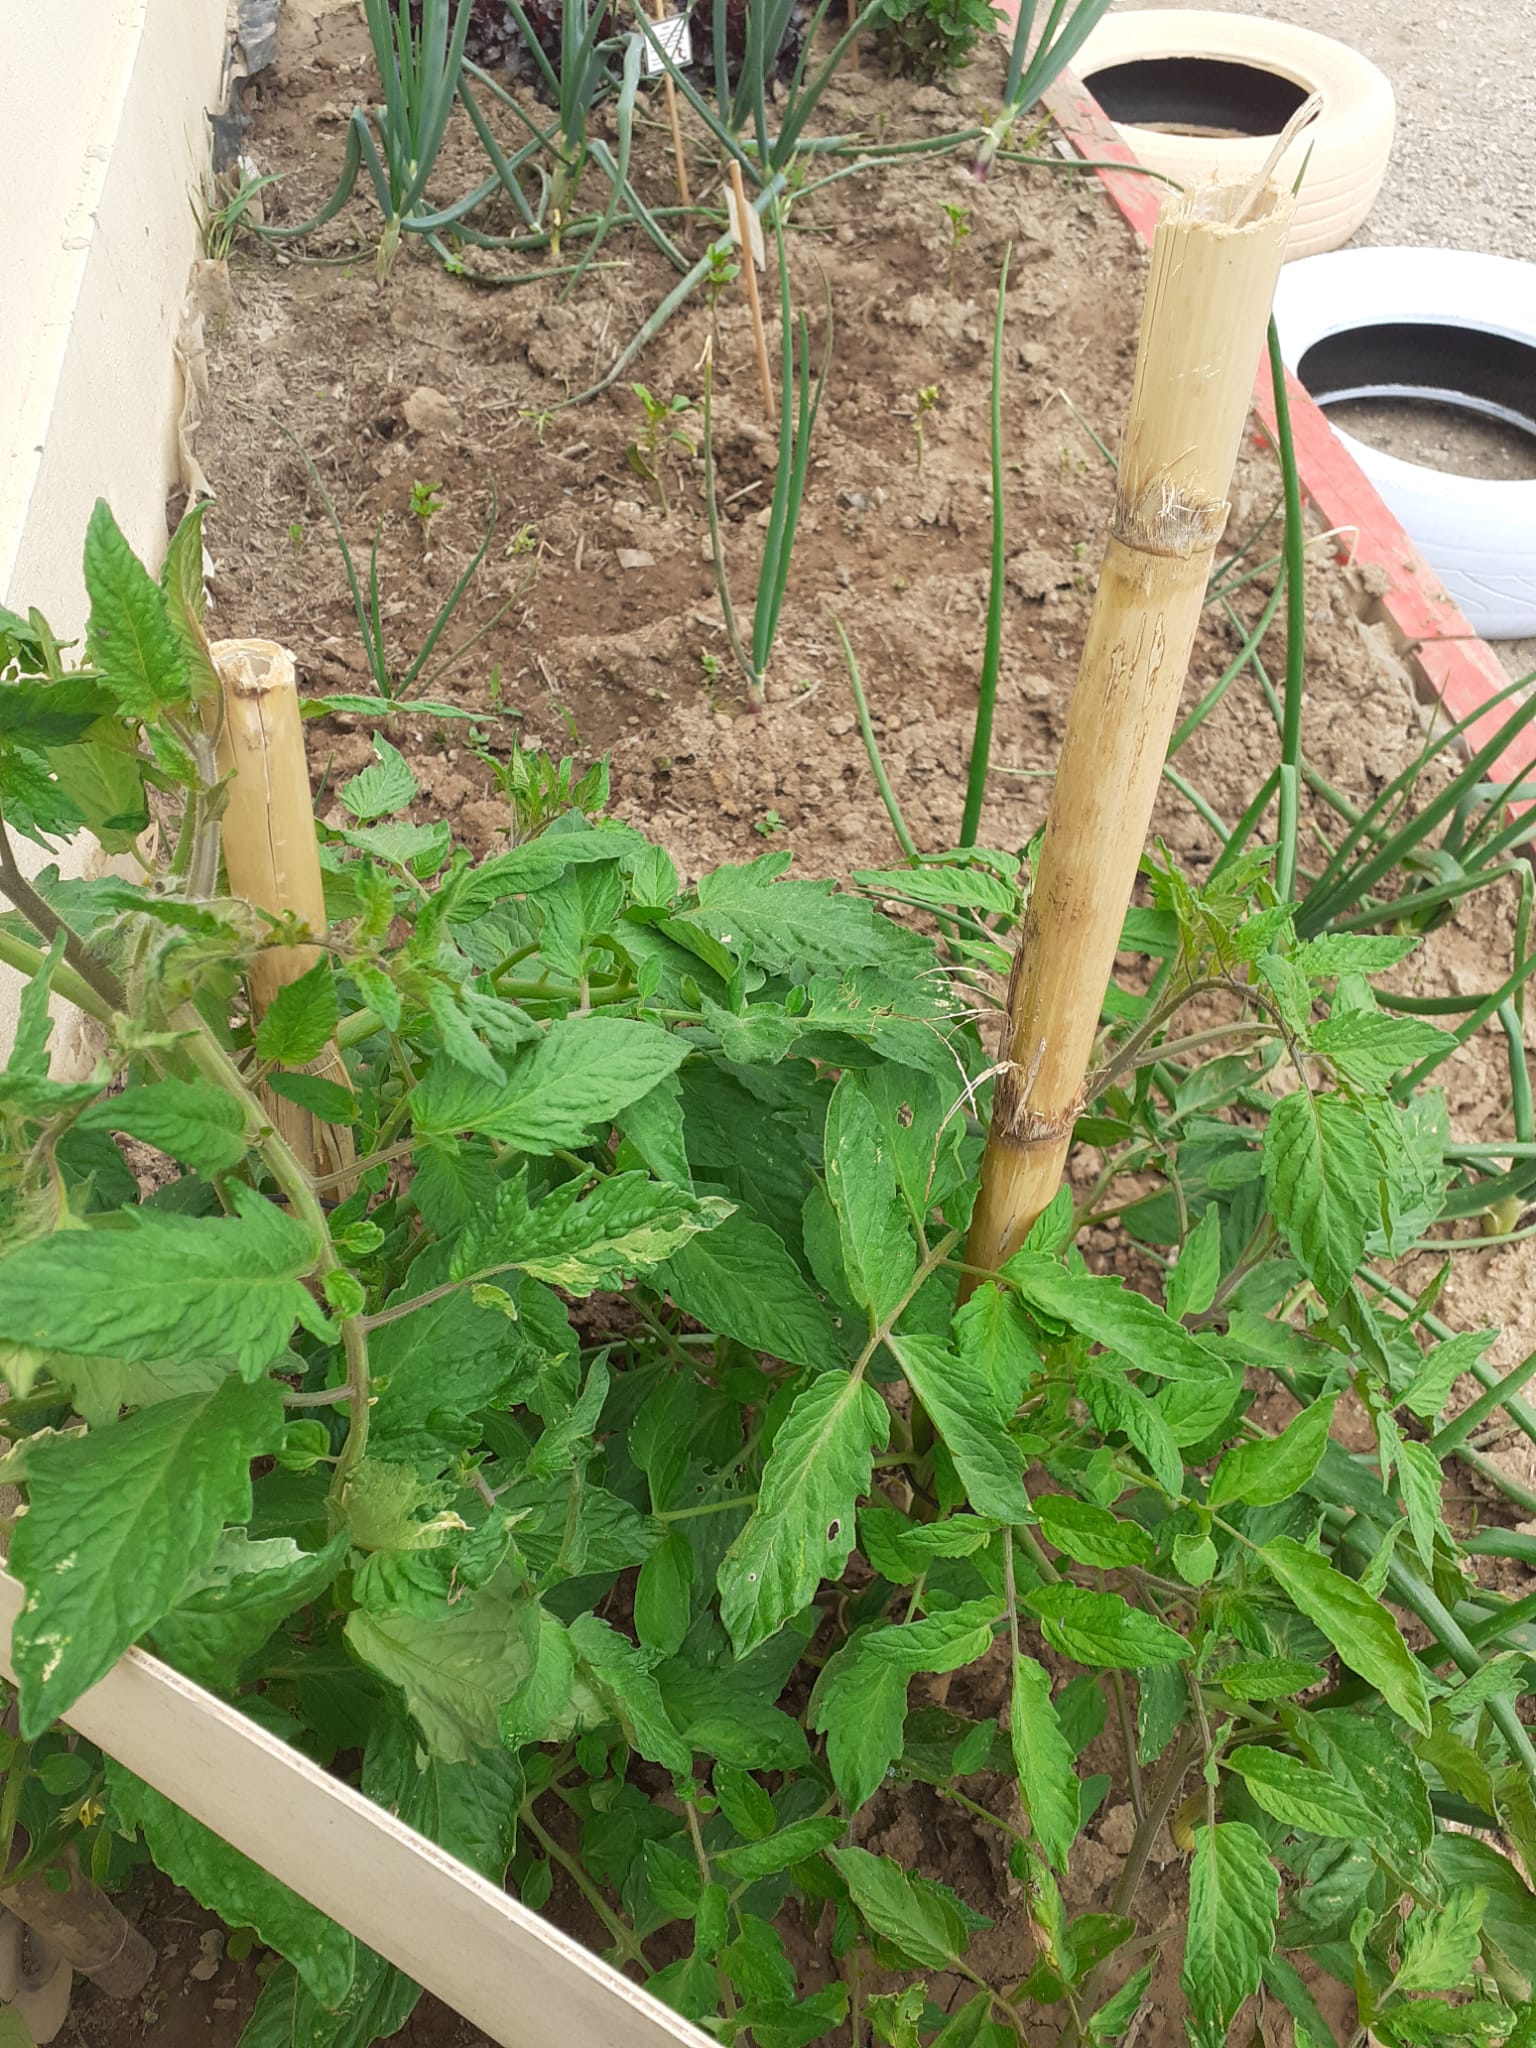 Horta BioHeliântia 1:
Tomateiro, pimentos e cebolo em fase de crescimento